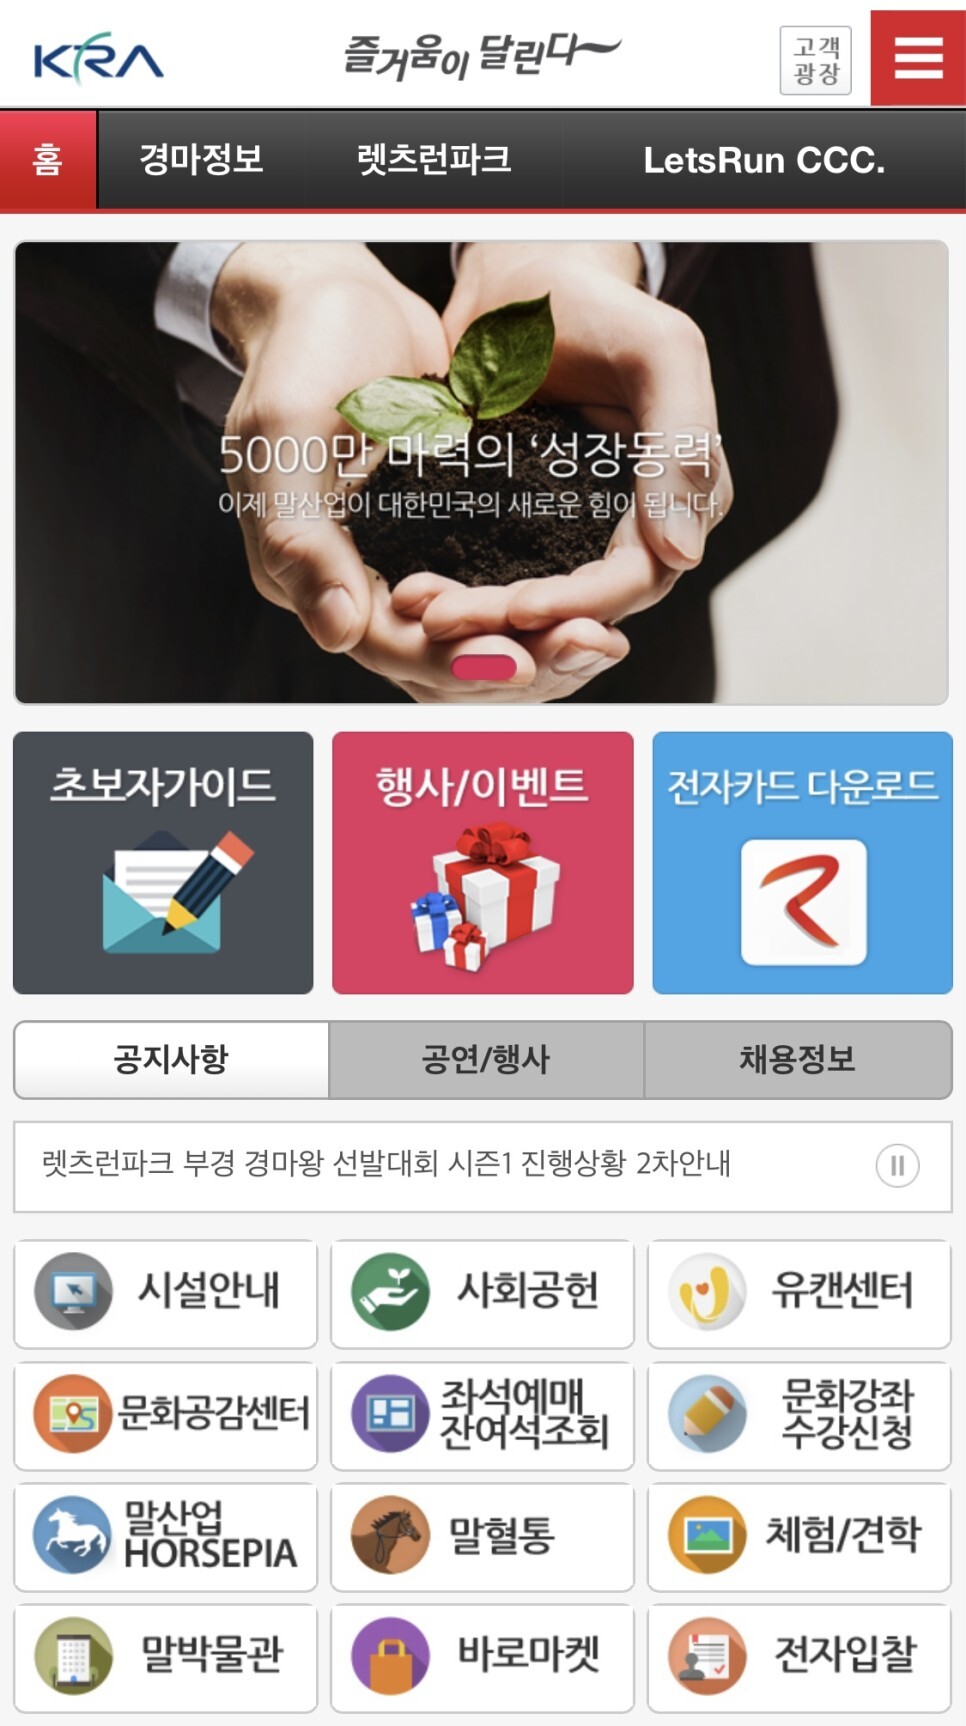 한국마사회 홈페이지